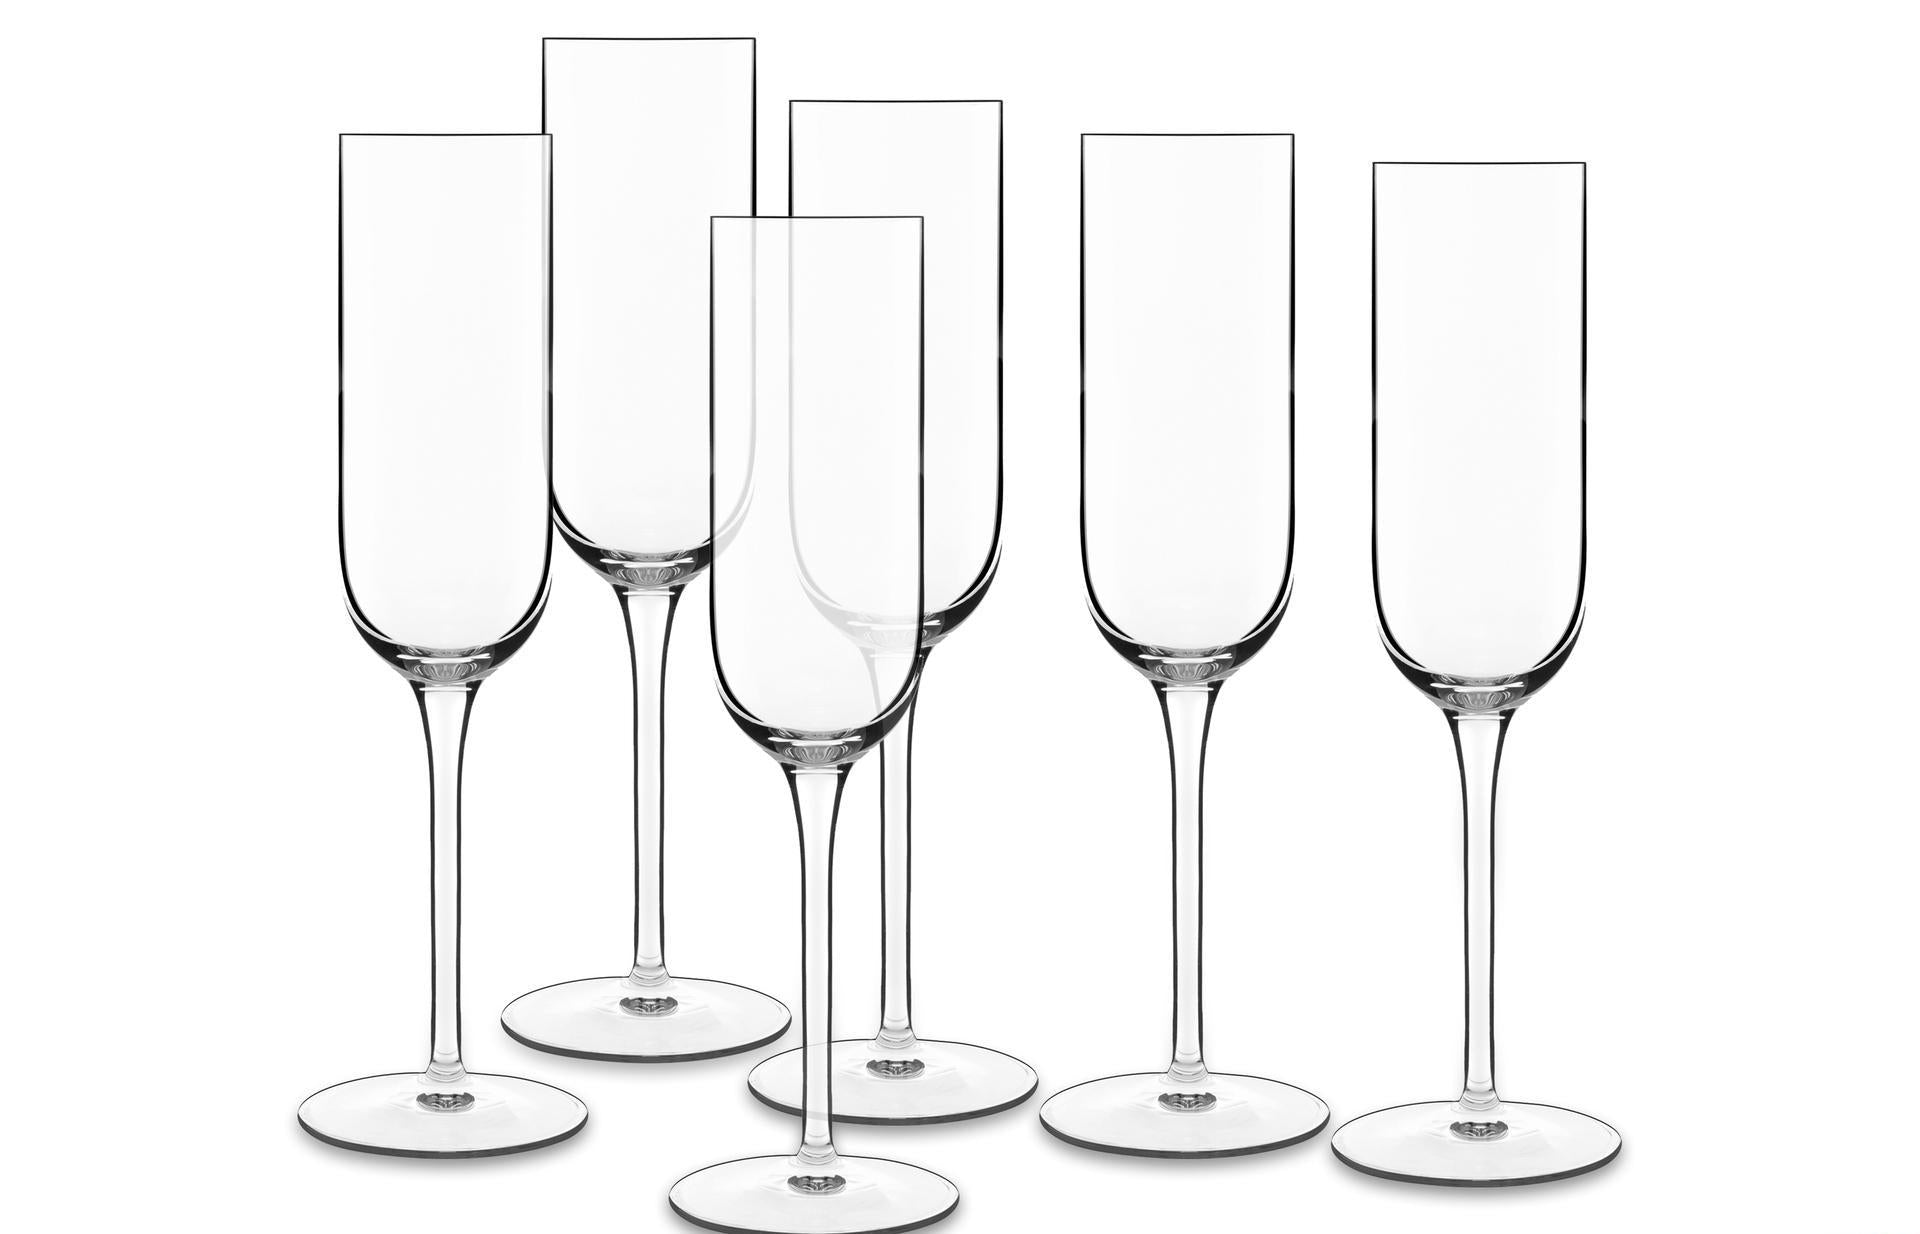 Luigi Borlioli Vinalia Champagne Glass Prosecco 21 CL 6 PCS.